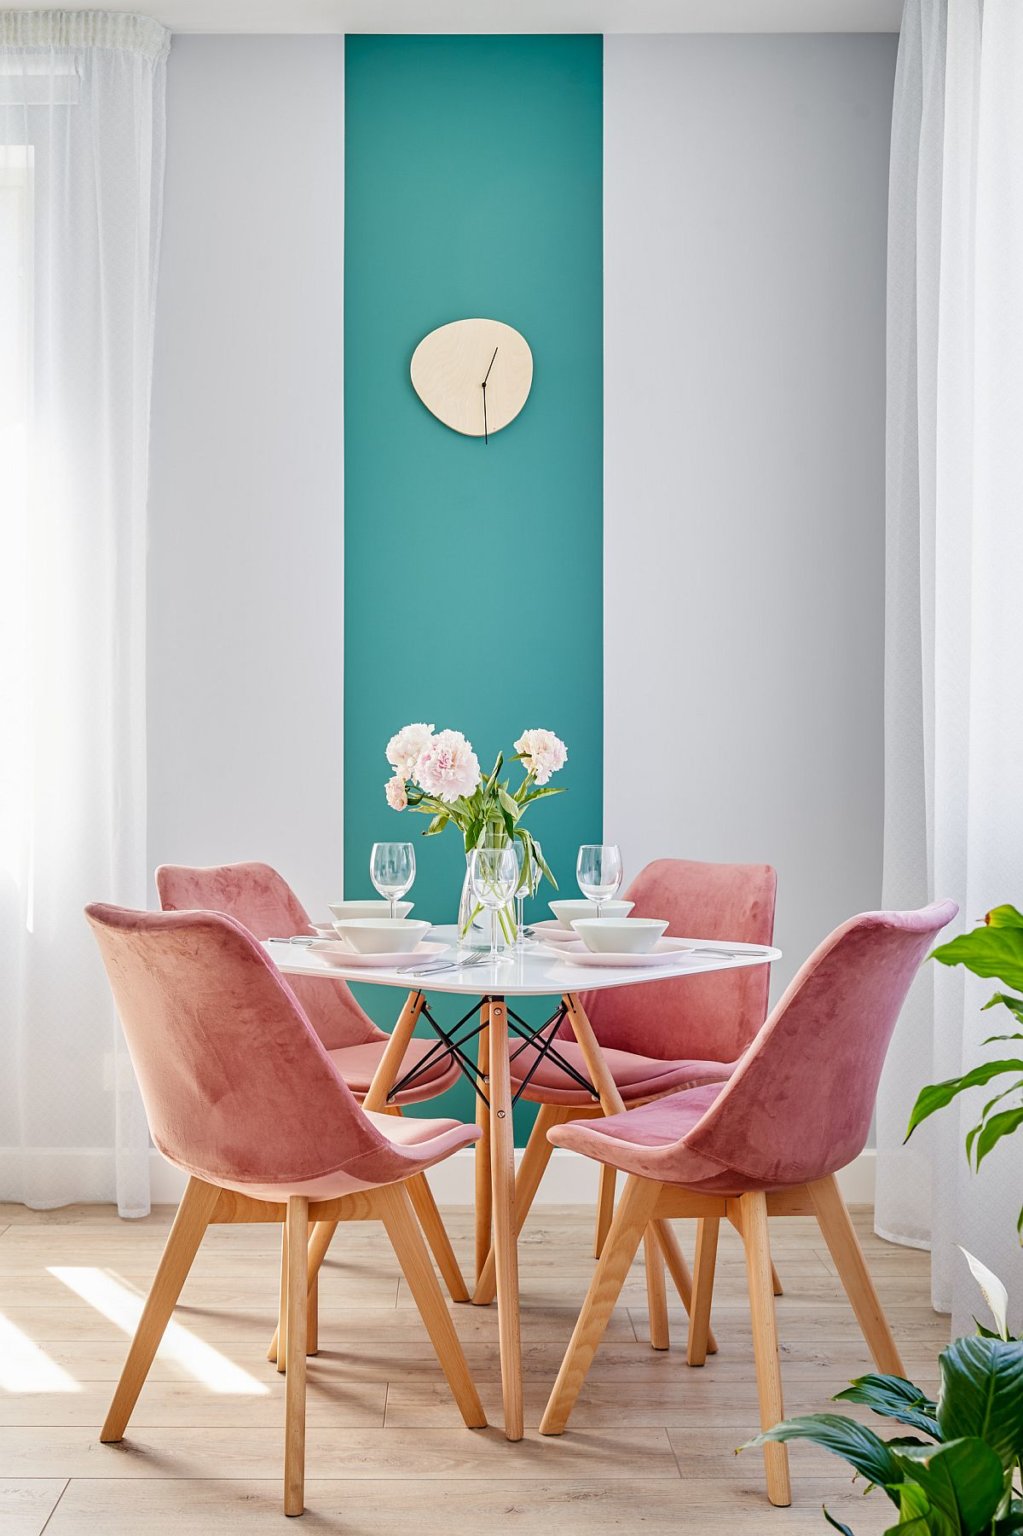 Hình ảnh phòng ăn nhỏ với ghế hồng pastel bao quanh bàn tròn, cạnh đó là bức tường xanh dương tạo điểm nhấn